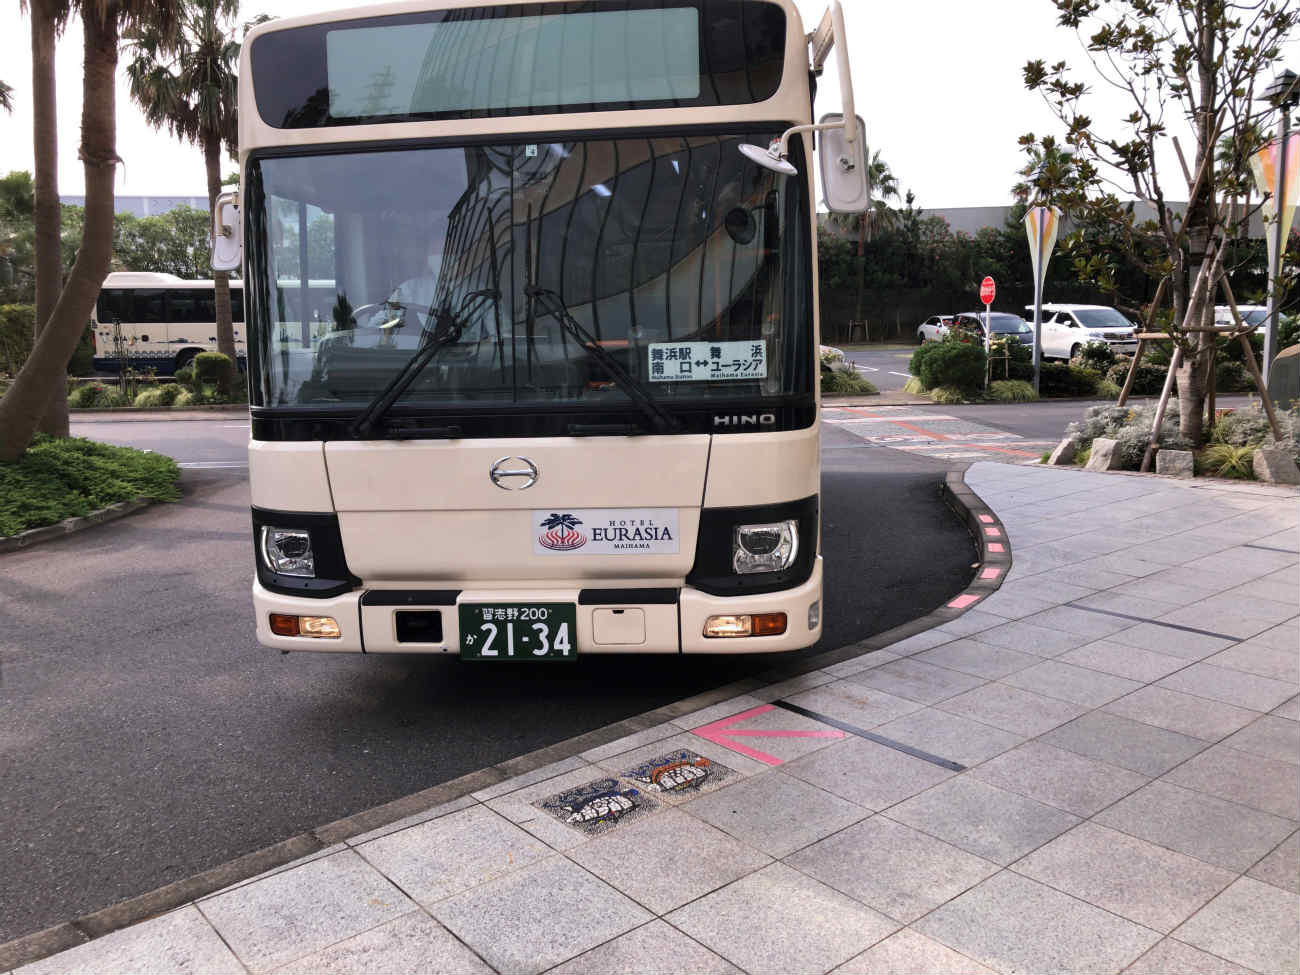 舞浜ユーラシアの無料シャトルバス